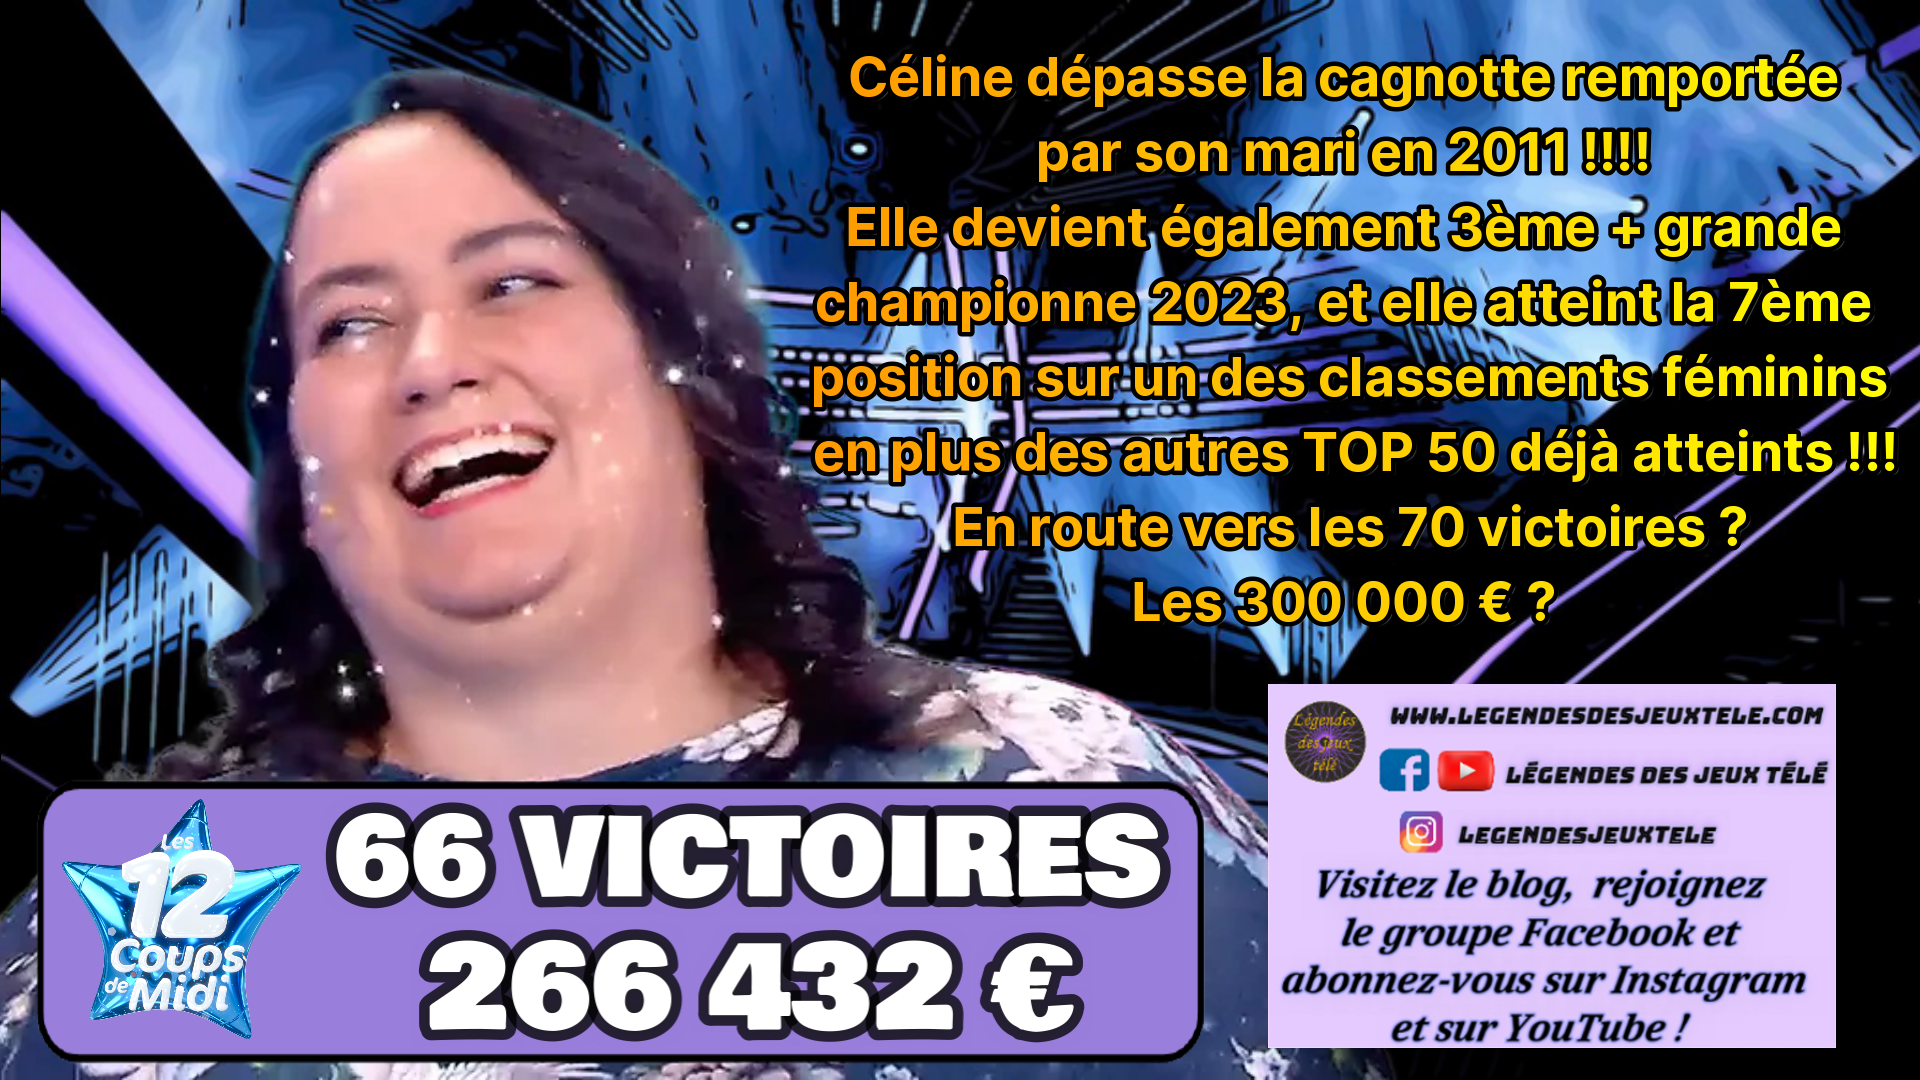 Céline des « douze coups de midi » bat LE record de cagnotte de son mari en dépassant 260 000 € en + de plein d’autres réjouissances !!!!